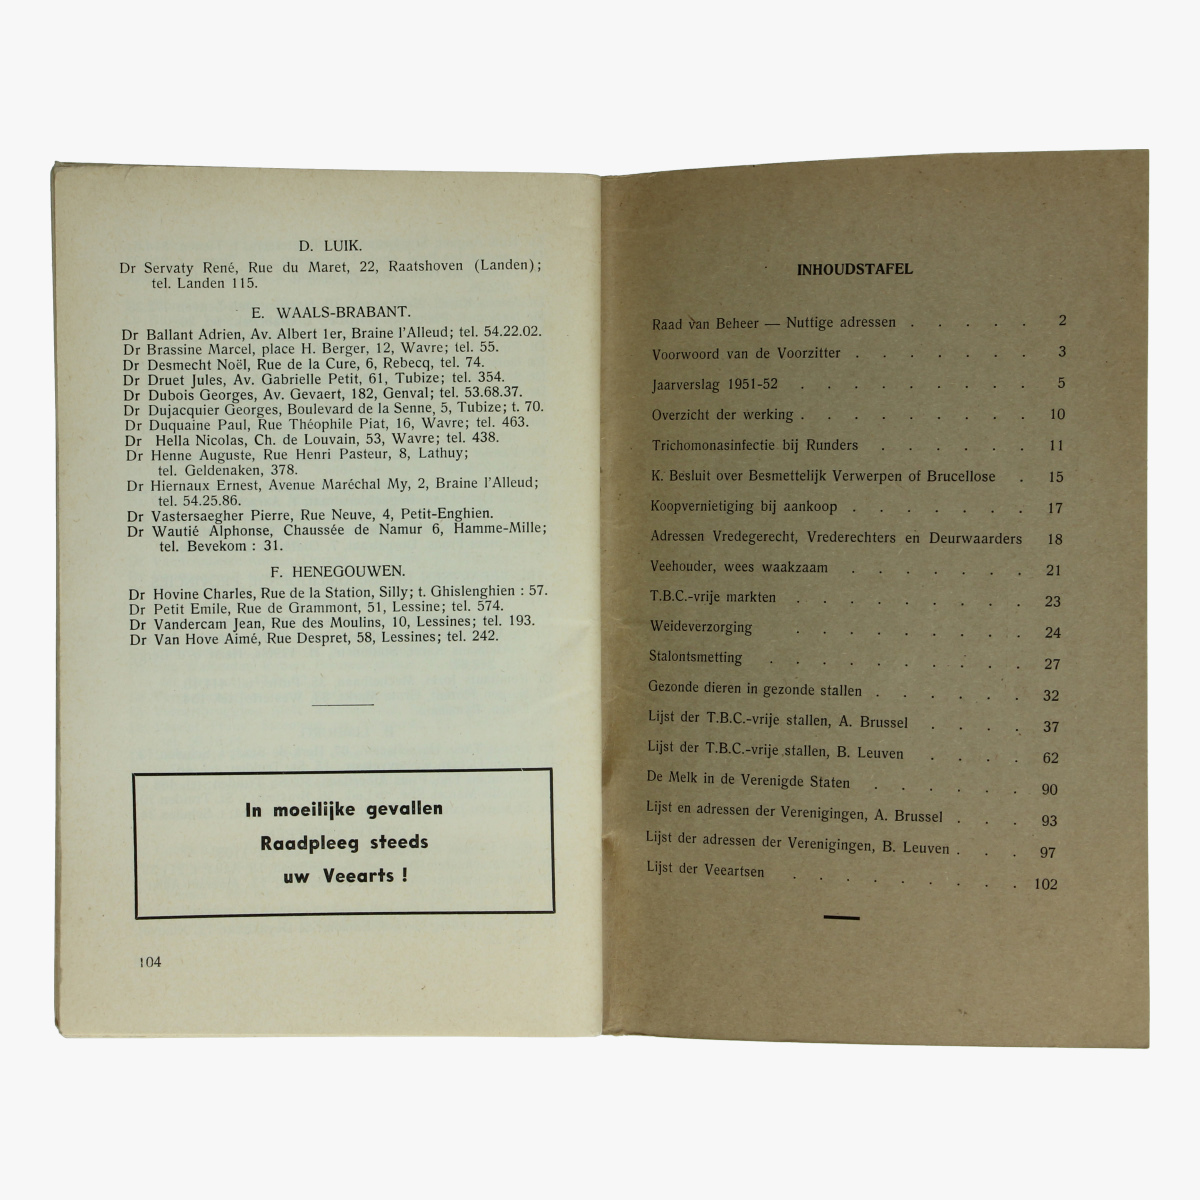 Afbeeldingen van Rundertuberculosebestrijding 1951-1952 Provincie Brabant. Boek